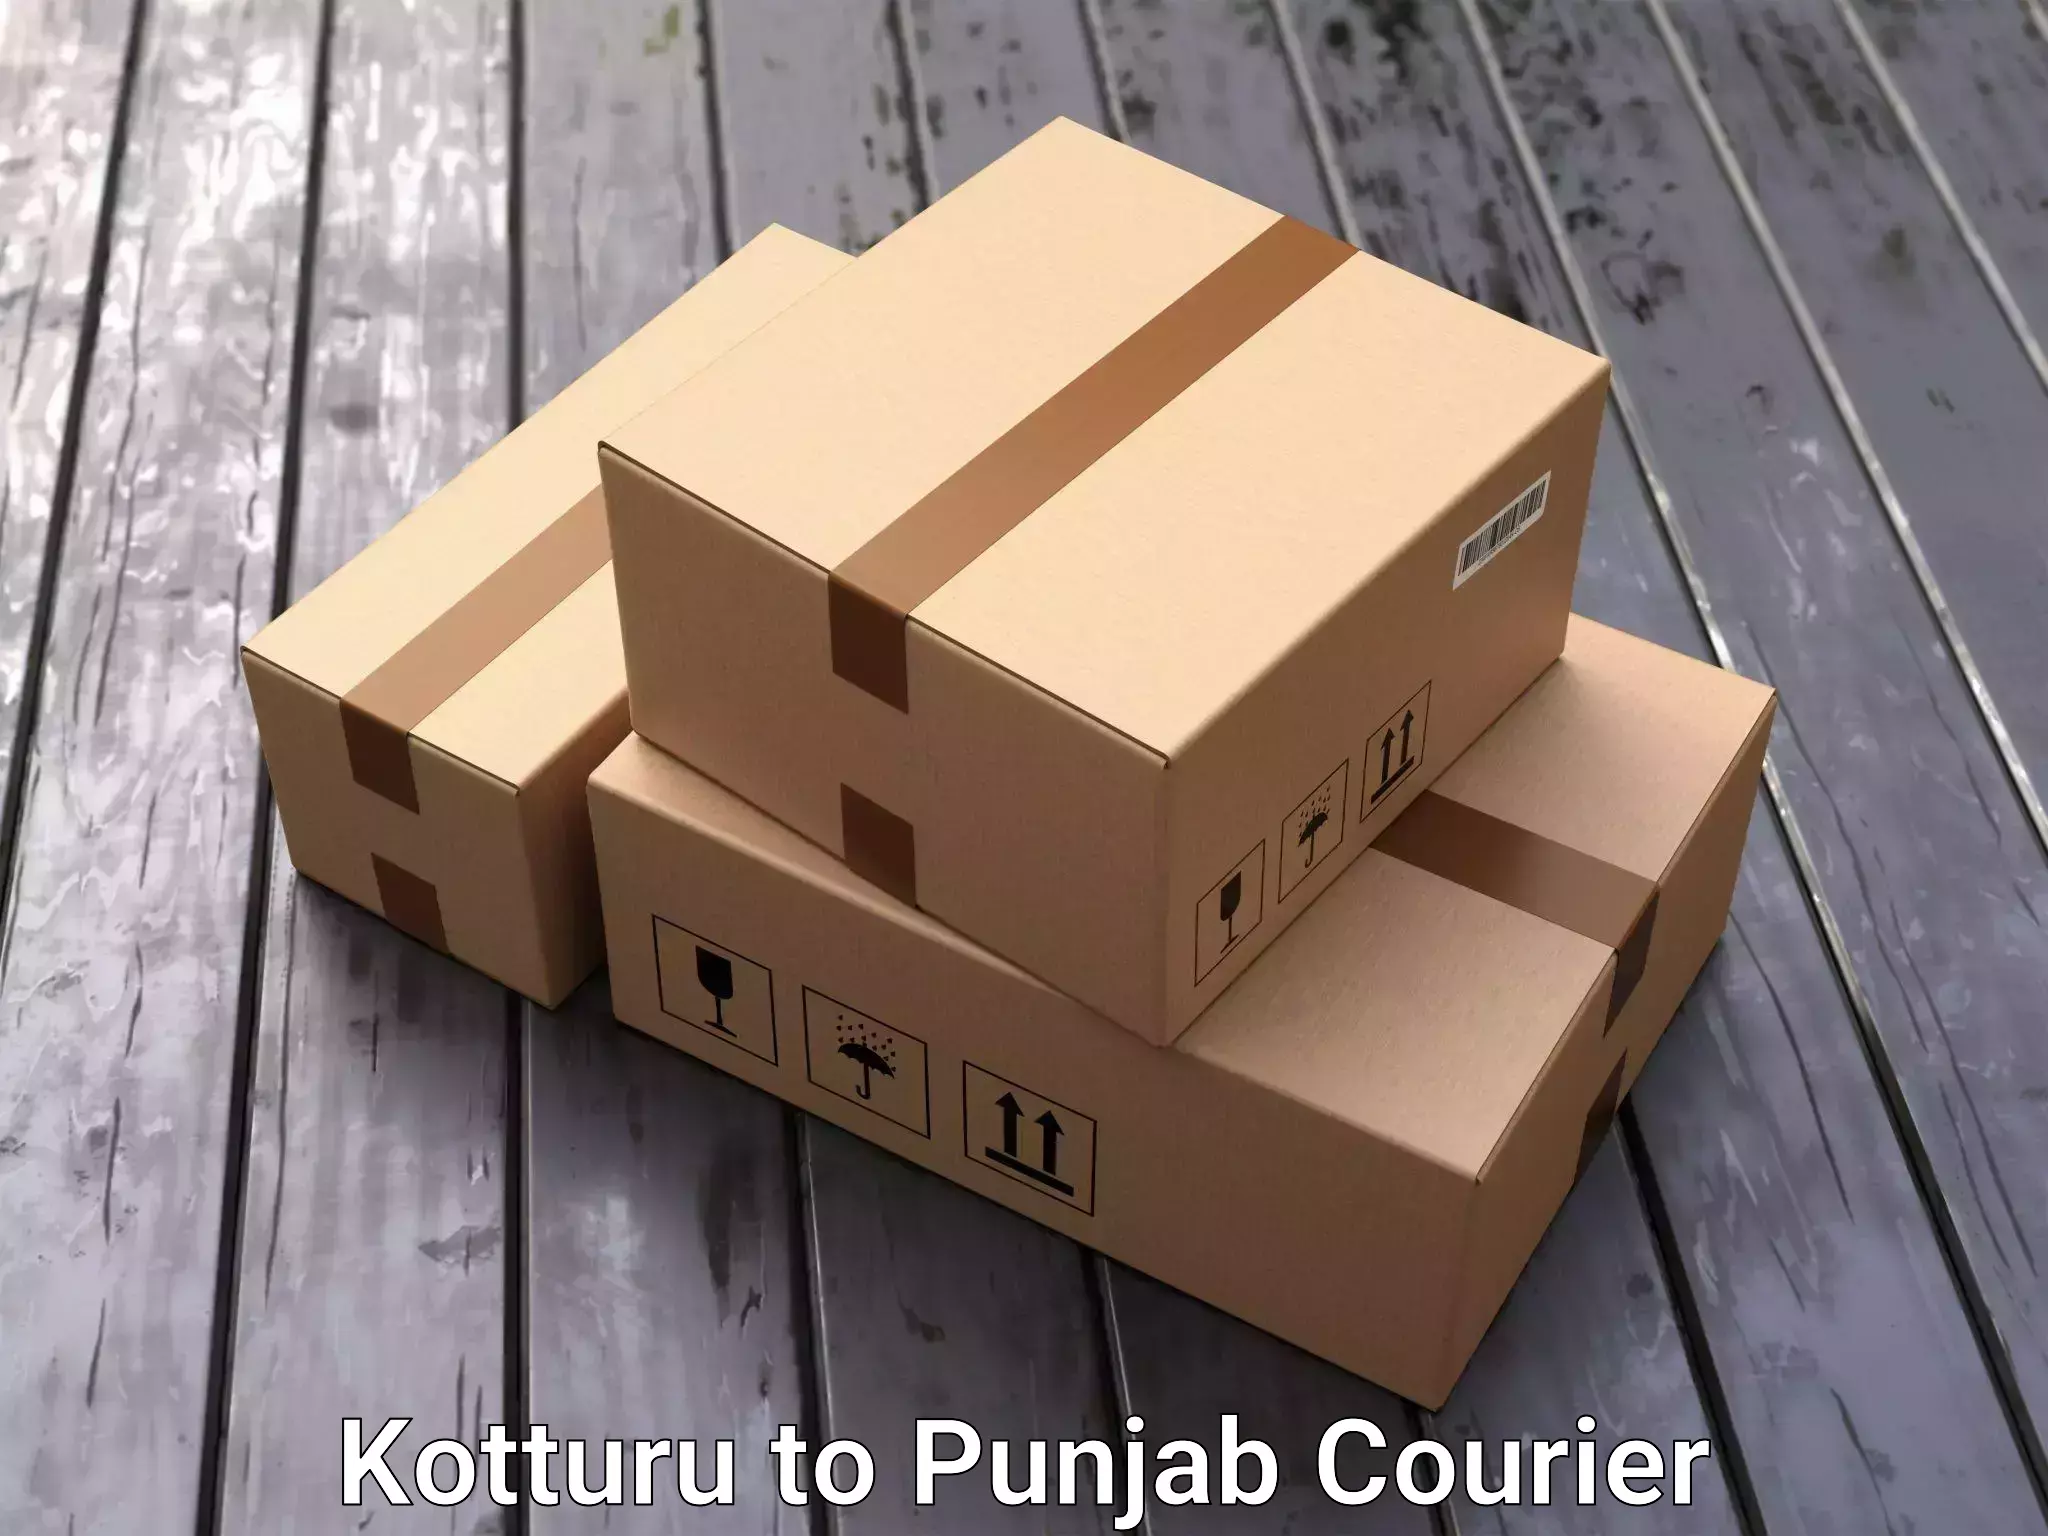 Stress-free household moving Kotturu to Punjab